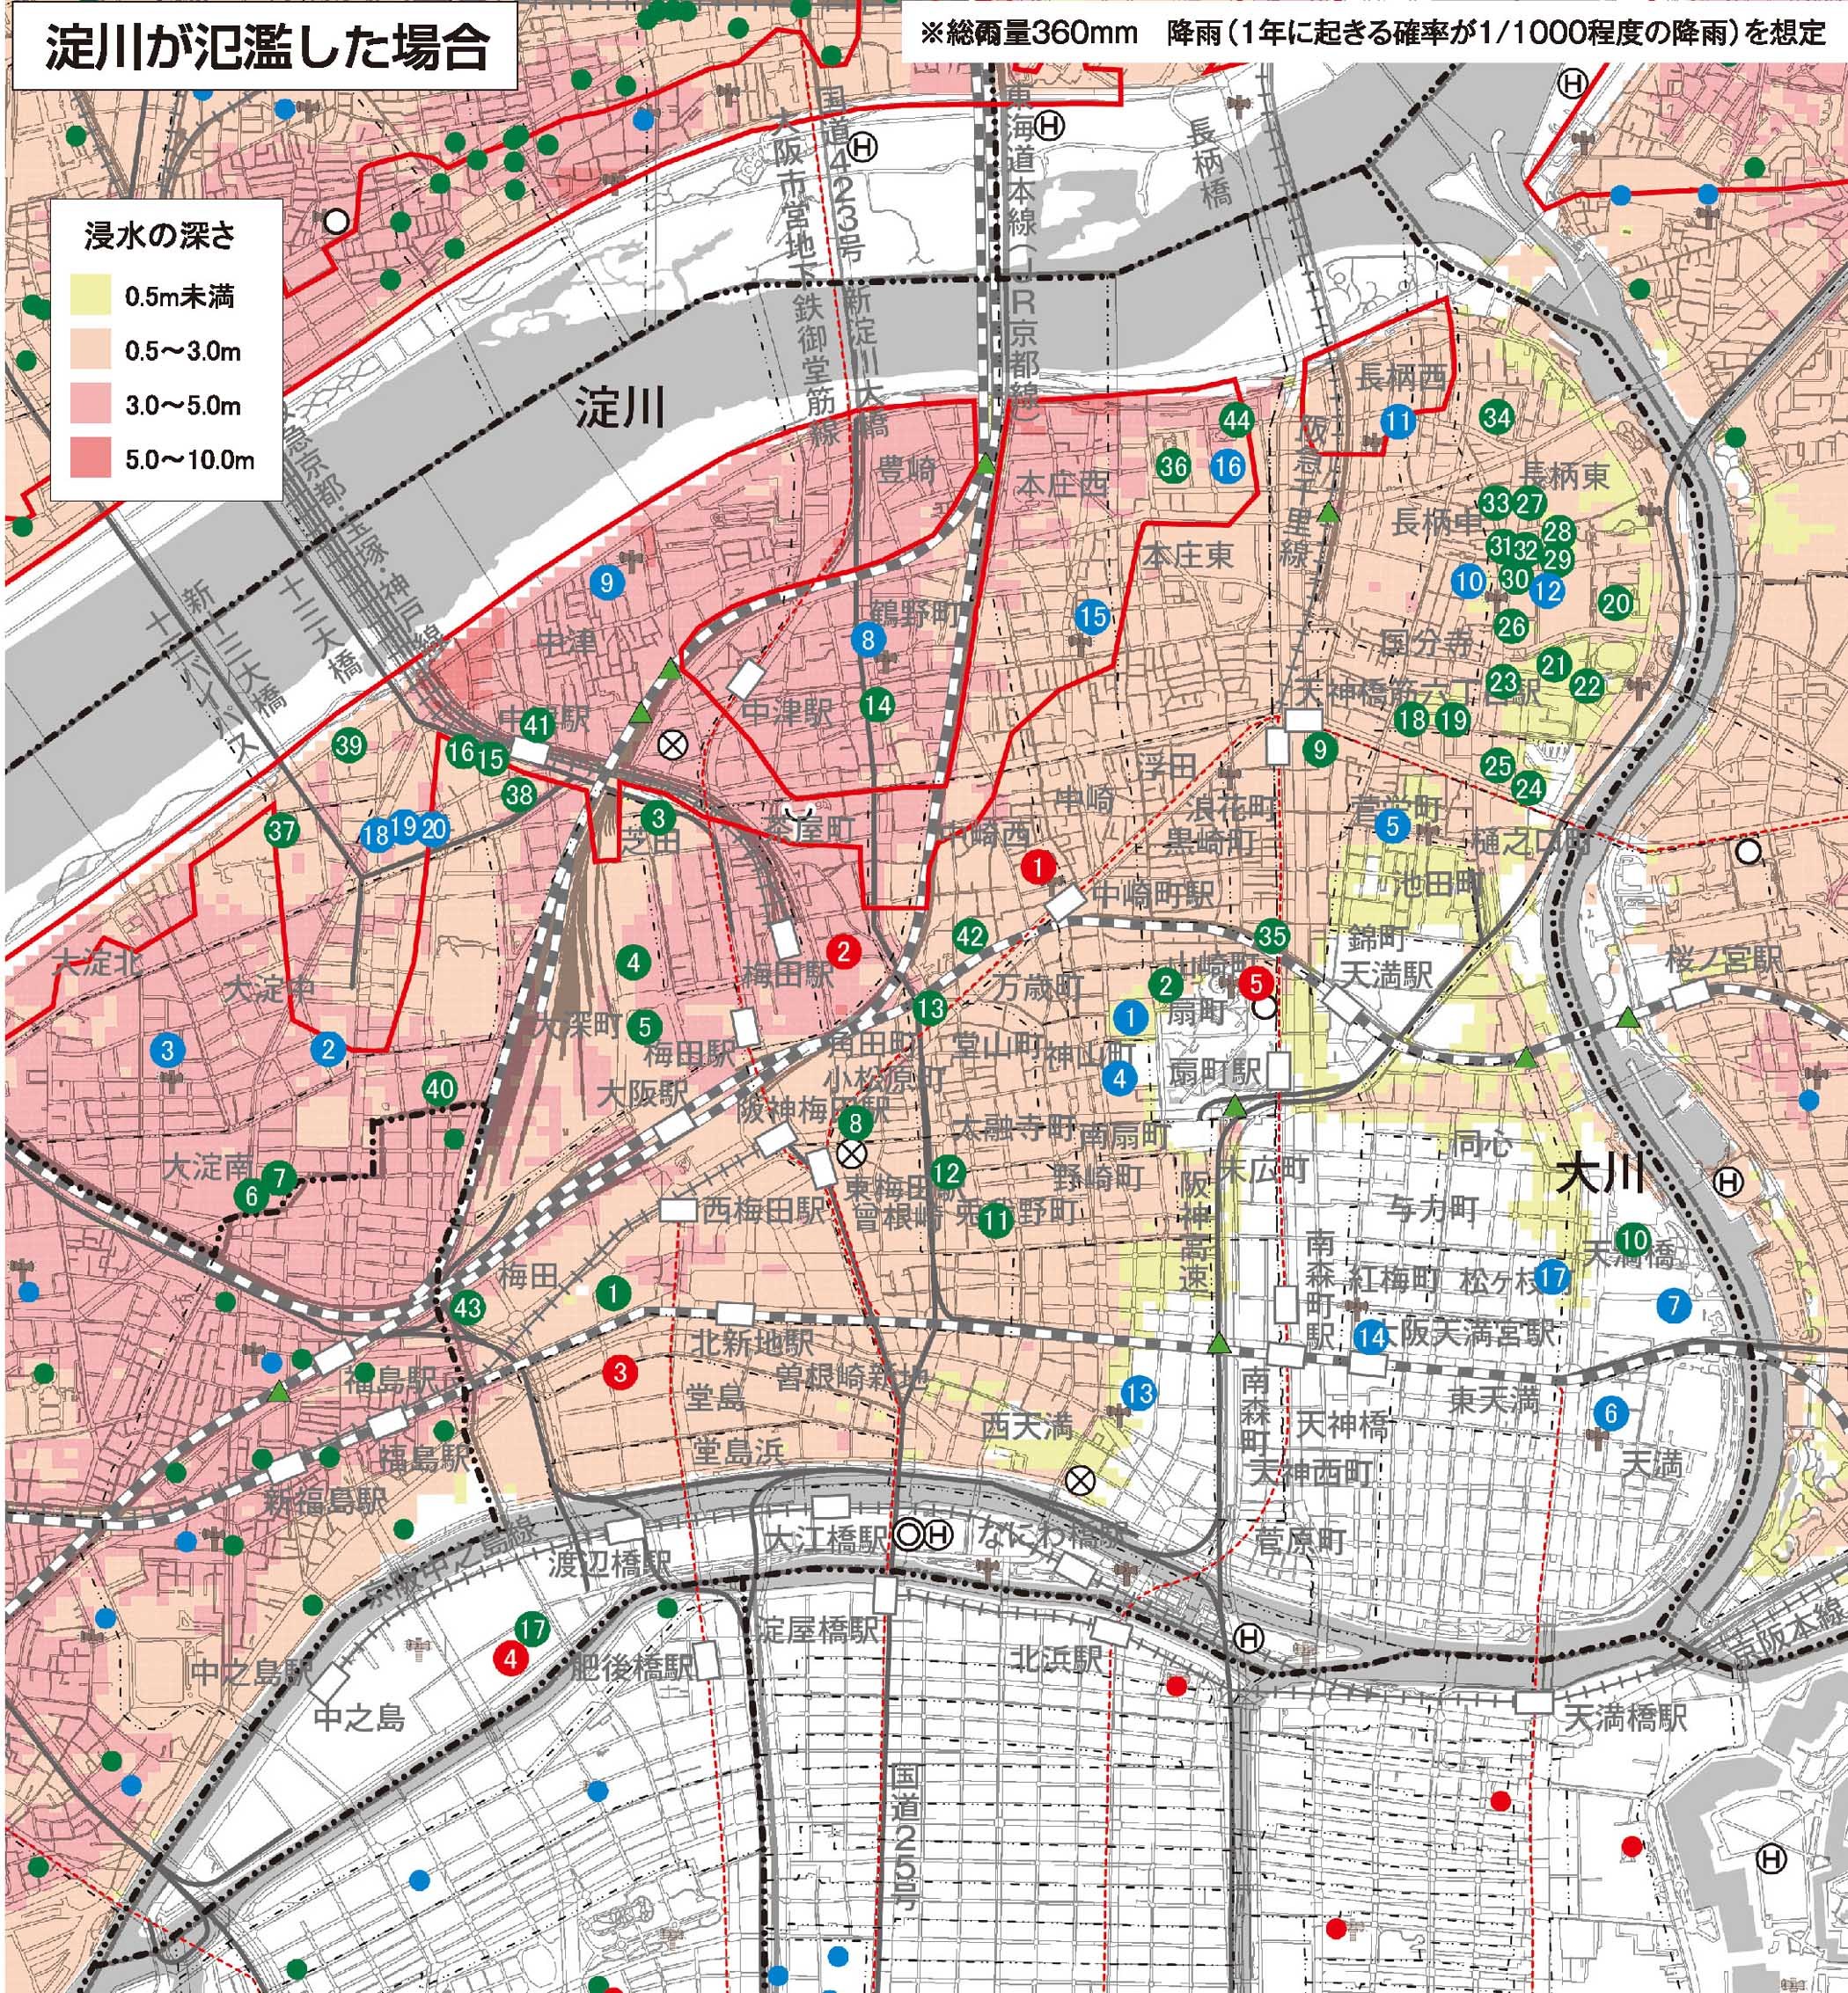 大阪市 水害ハザードマップ 北区 災害に備える ハザードマップ